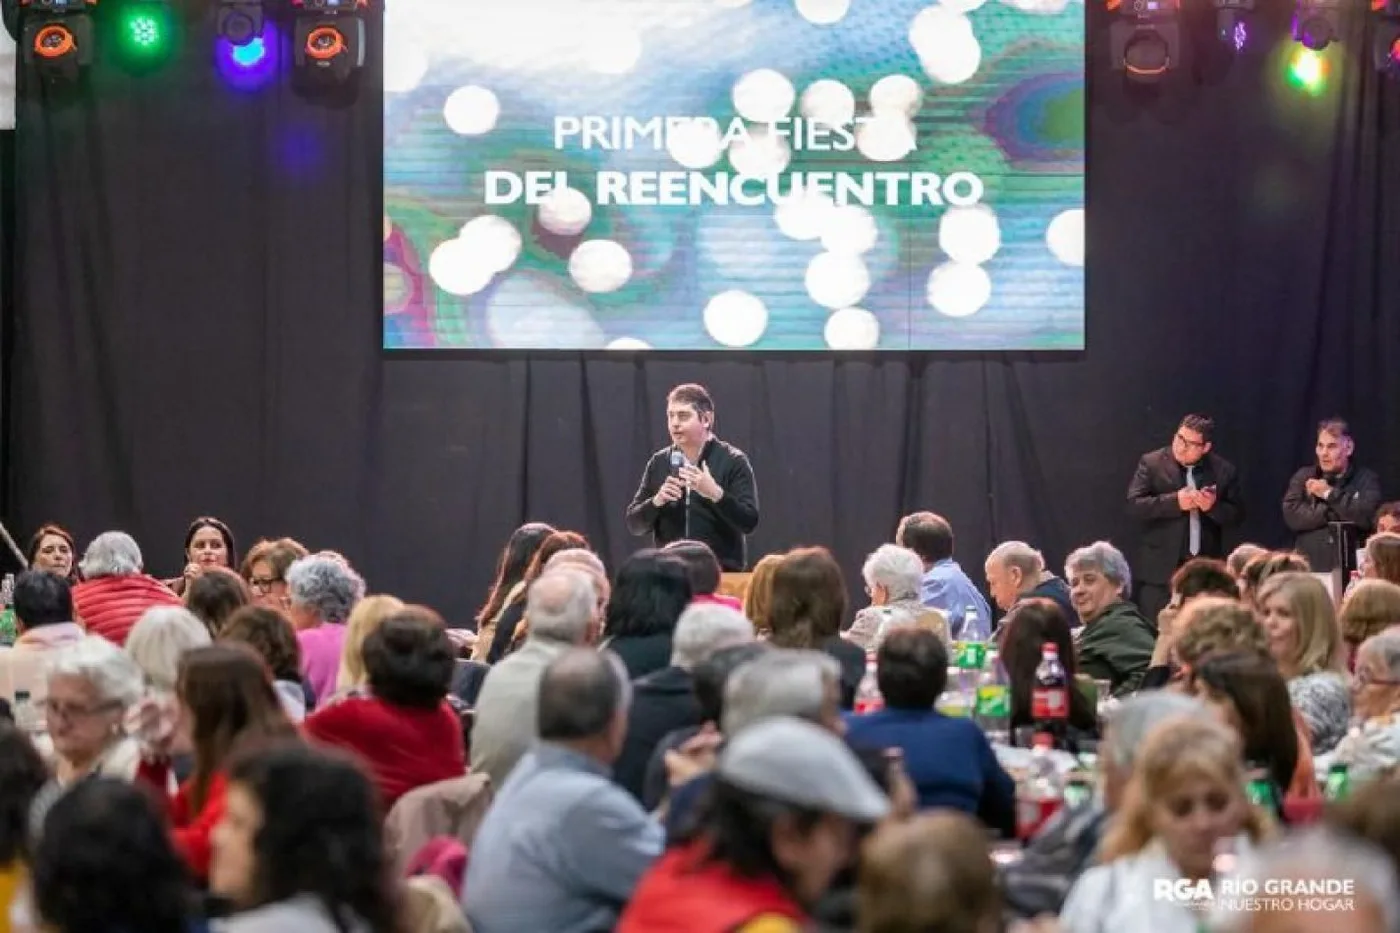 Se trató de la primera “Fiesta del Reencuentro”, evento organizado por el Municipio de Río Grande.